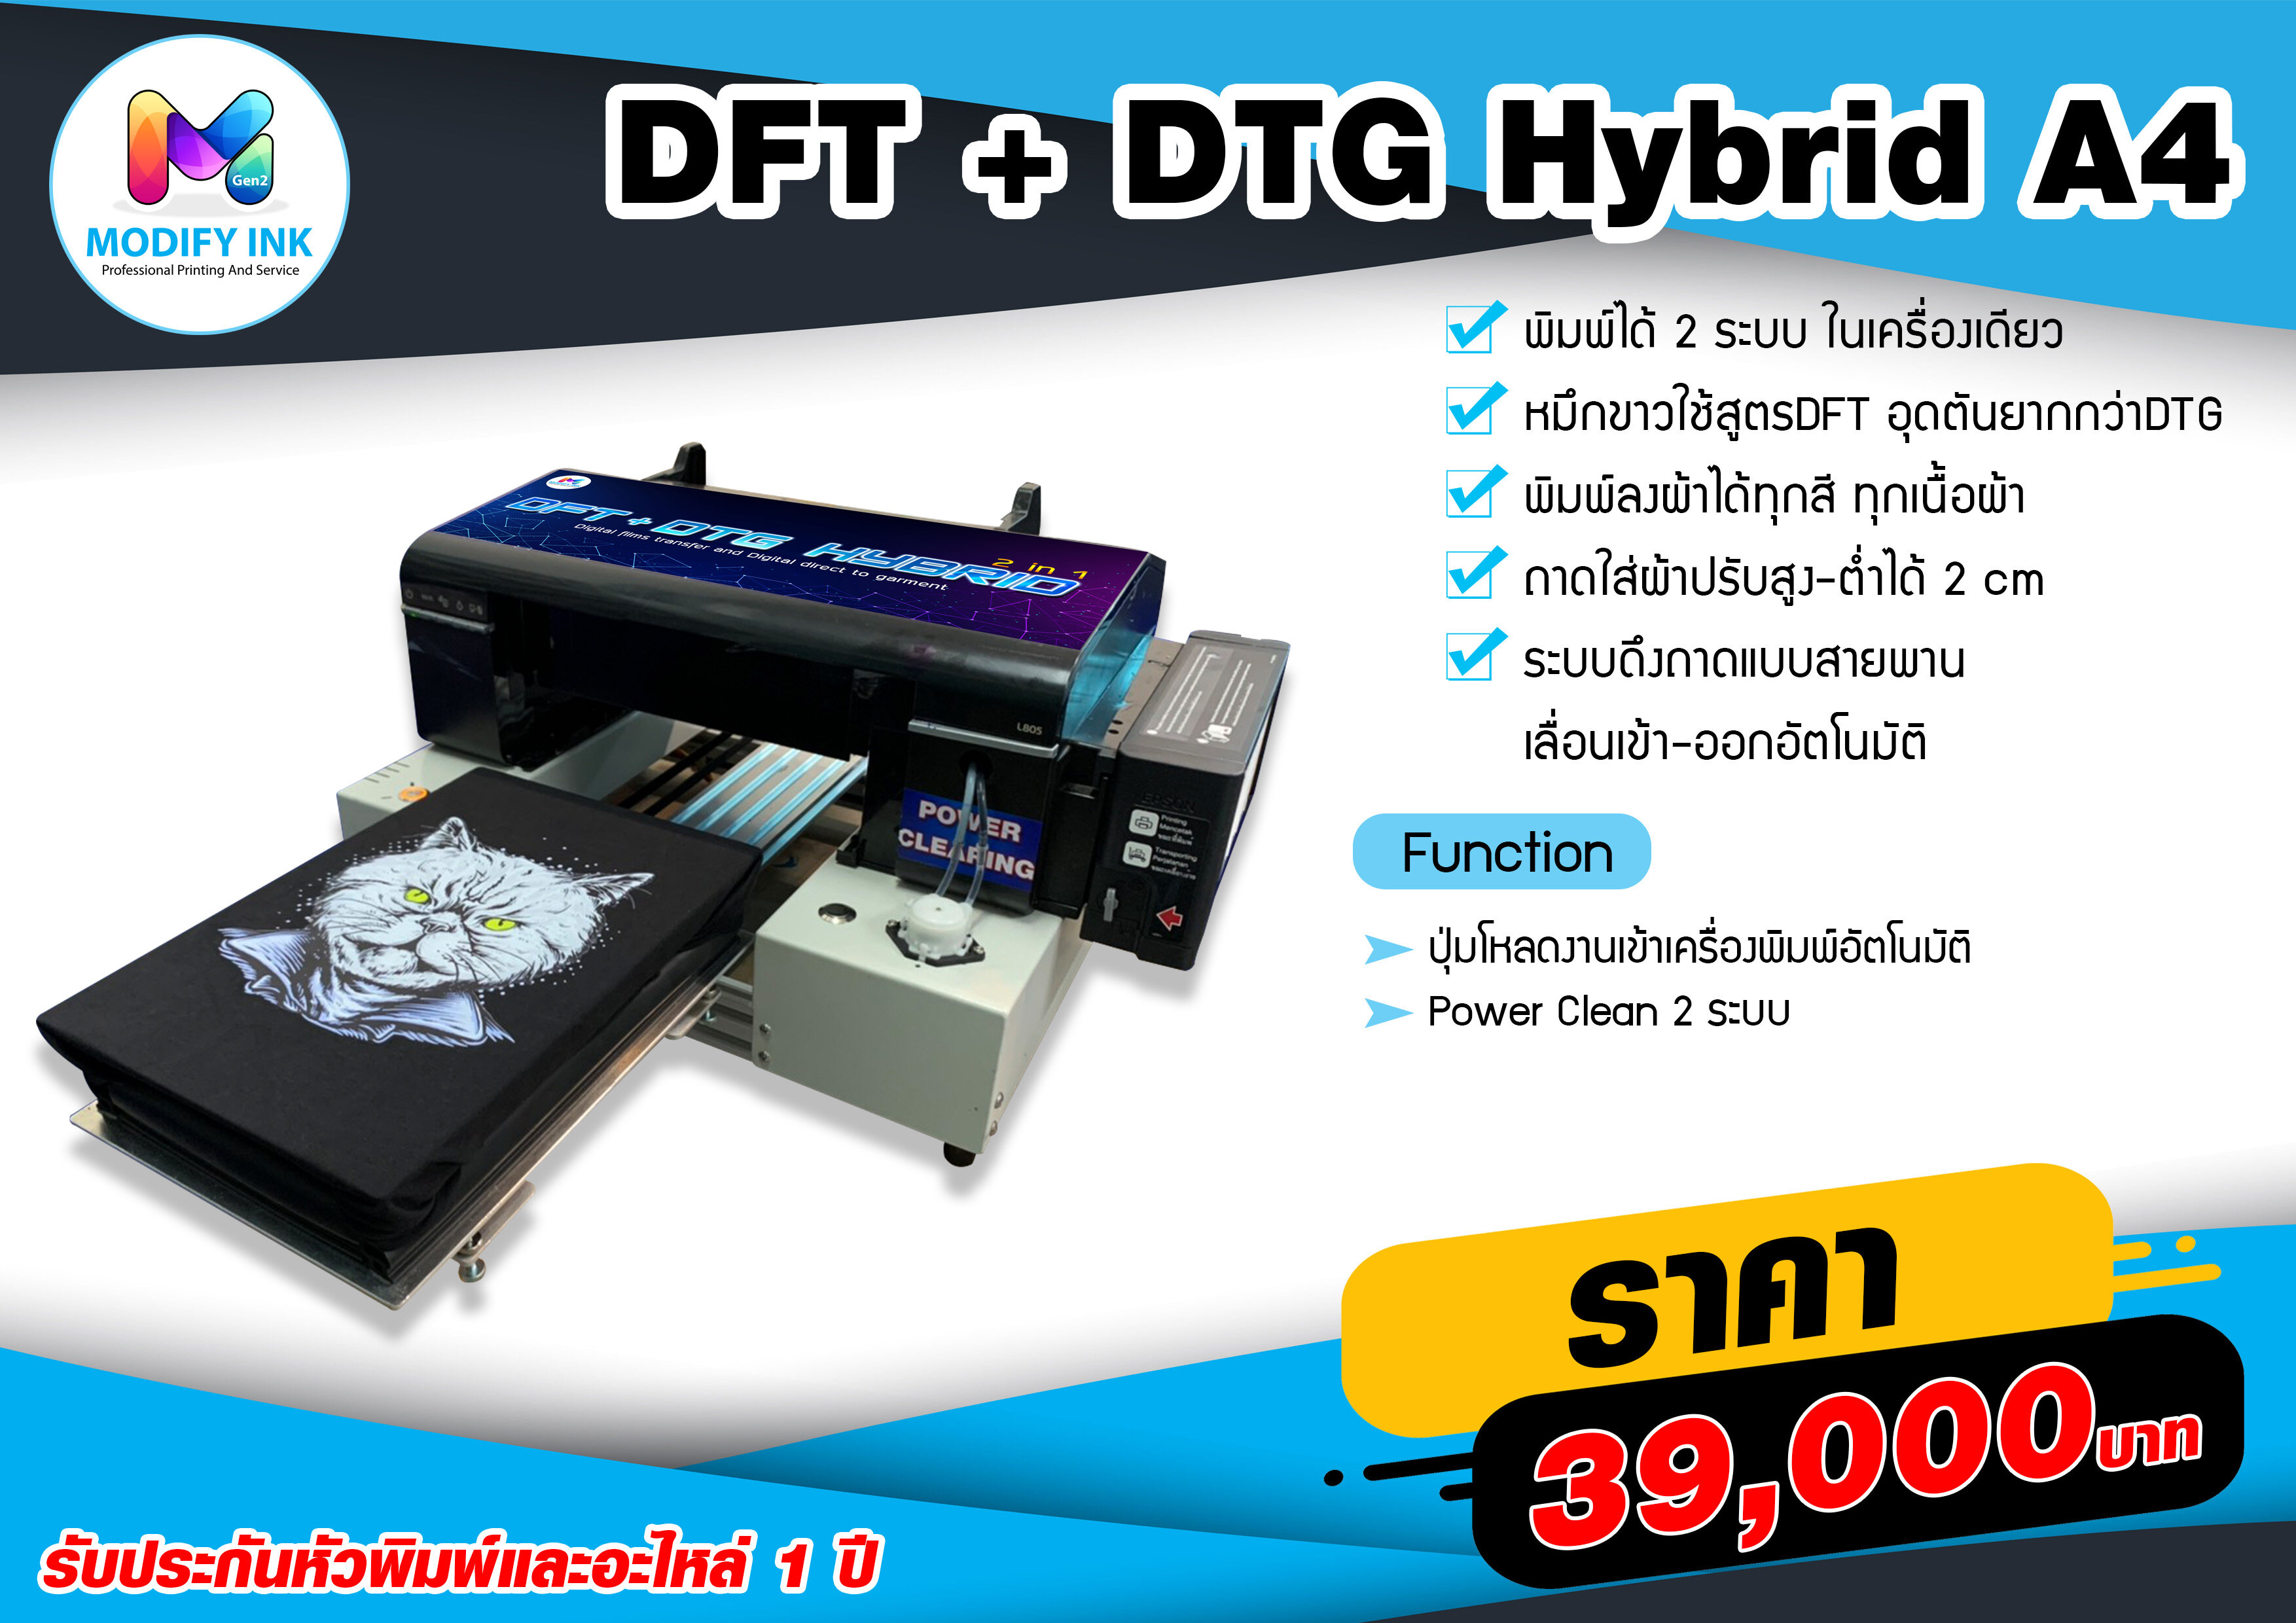 เครื่องพิมพ์ ขนาด A4 DFT + DTG Hybrid 2in1 พิมพ์ตรงลงผ้า + พิมพ์ฟิล์ม DFT  พิมพ์ 2 ระบบ ได้ในเครื่องเดียว [Modifyink]